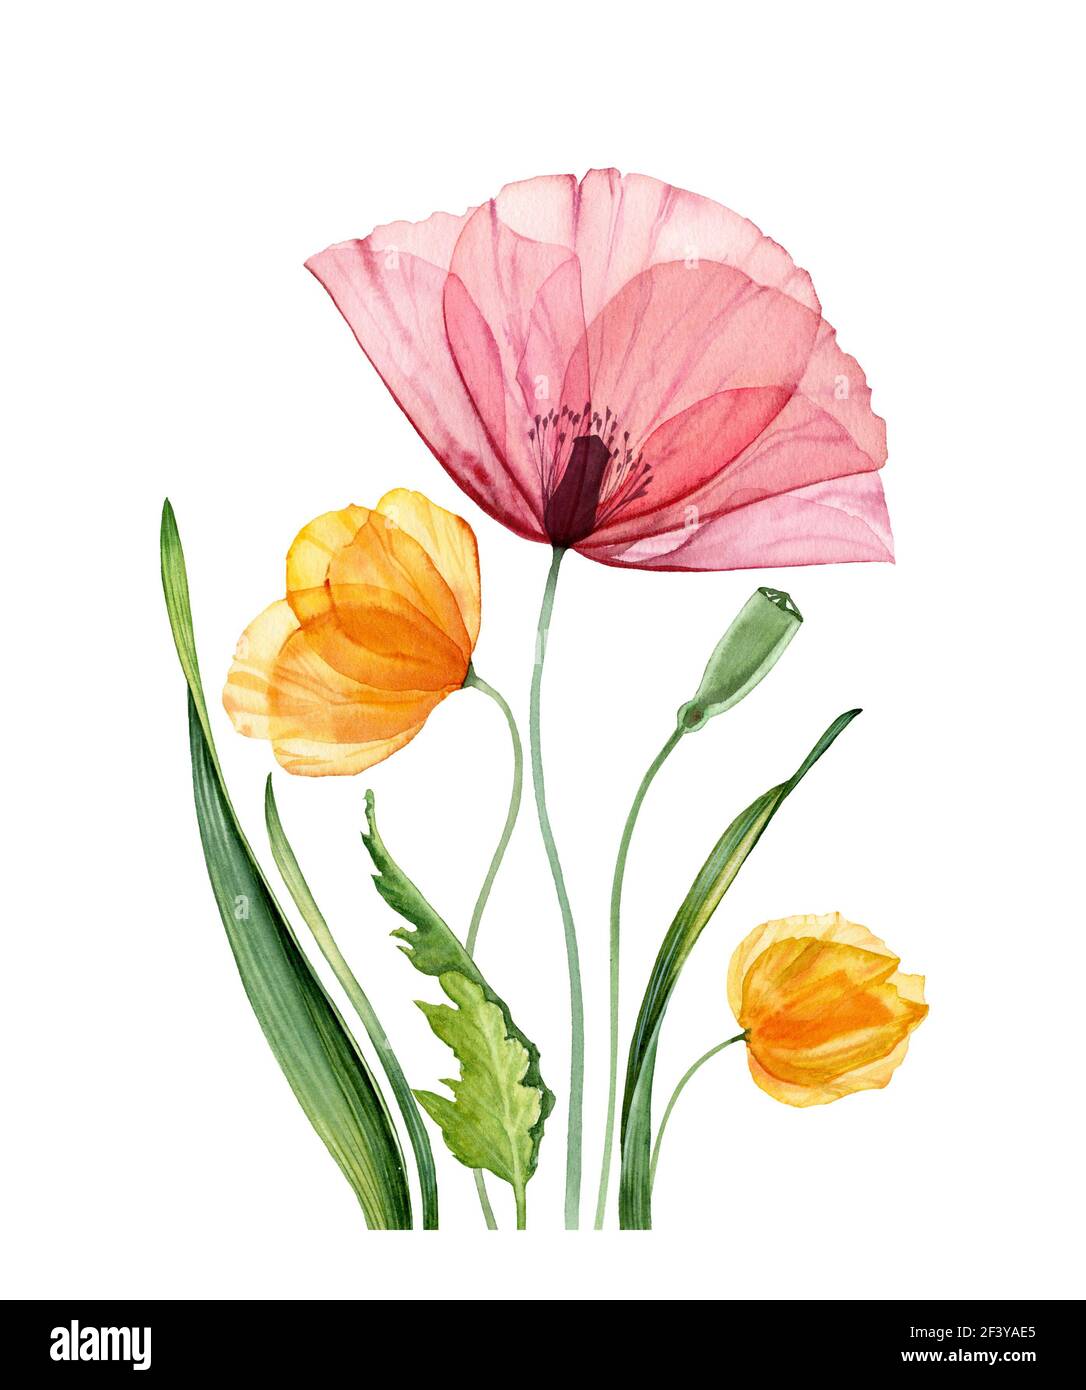 Composition florale aquarelle. Gros pavot rouge et tulipes jaunes. Fleurs de champ d'été avec des feuilles vertes. Illustration botanique réaliste pour Pâques Banque D'Images